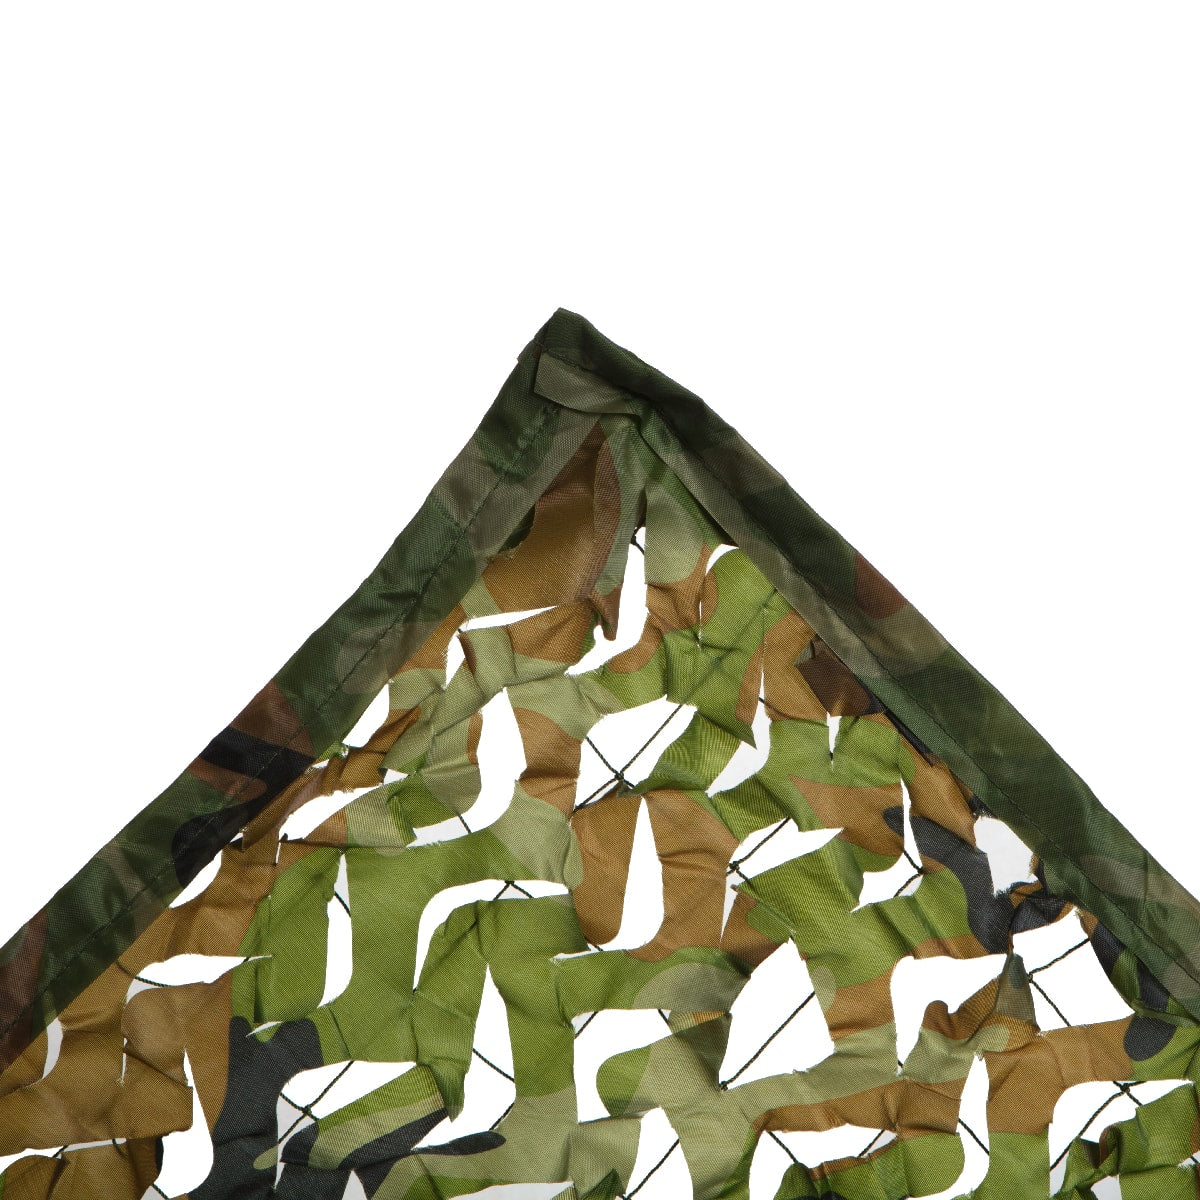  Camouflage Net, 200 x 300 cm / 6 x 10'